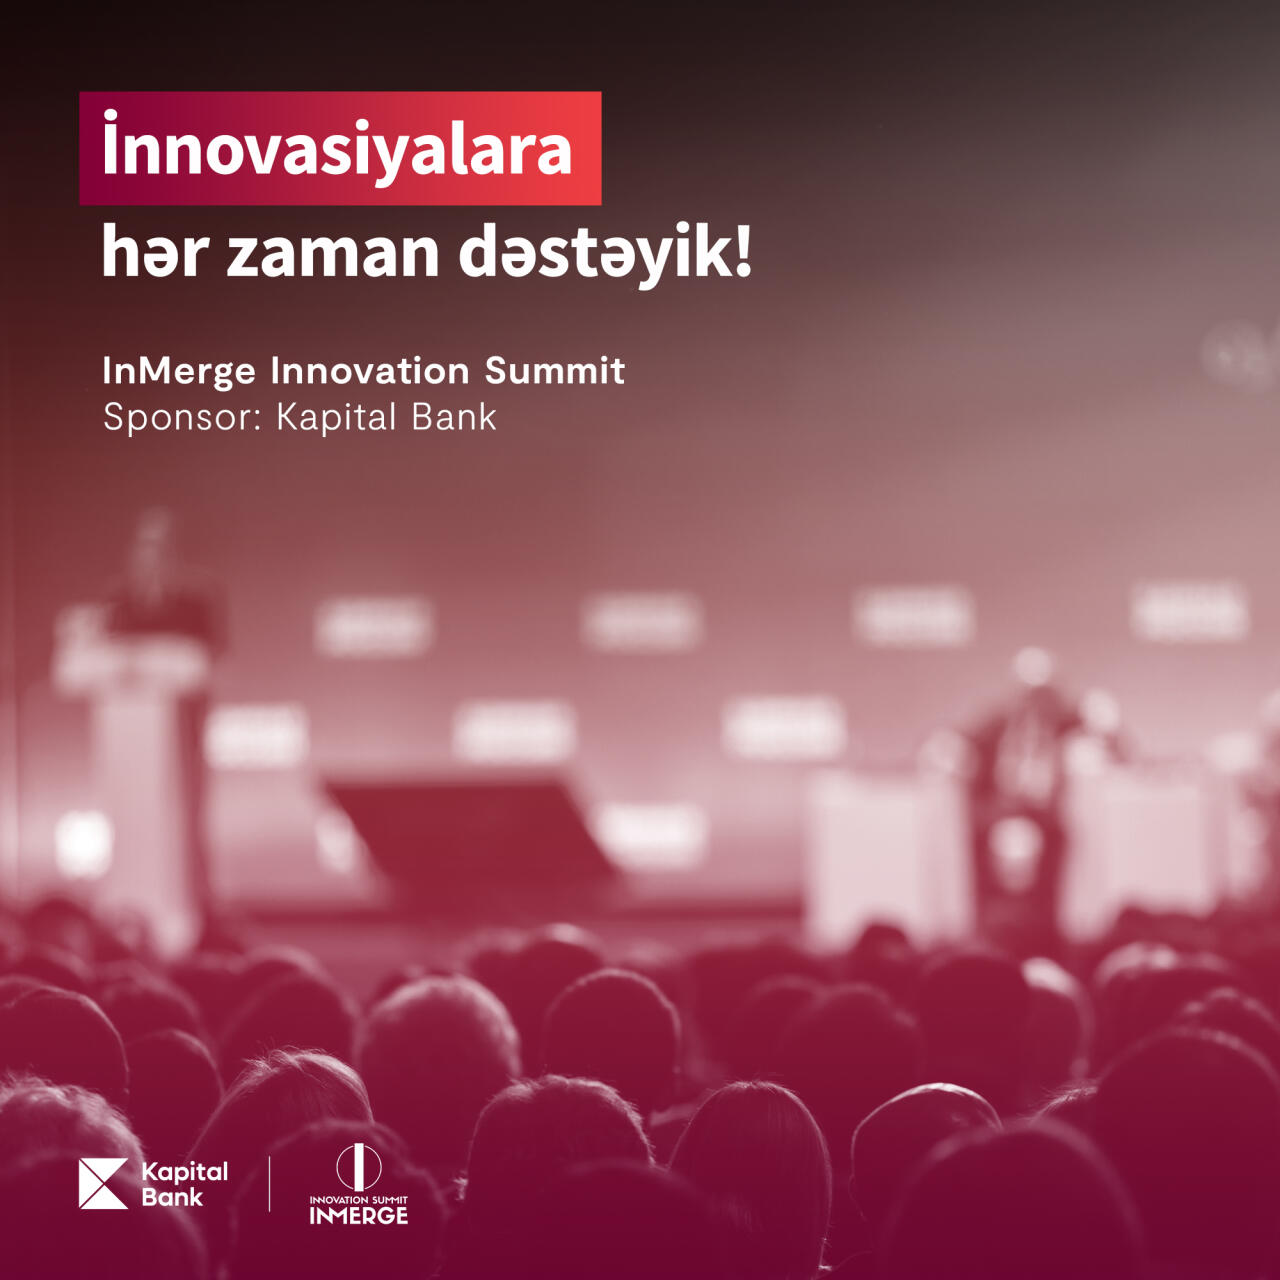 Kapital Bankın sponsorluğu ilə “InMerge Innovation Summit” keçiriləcək